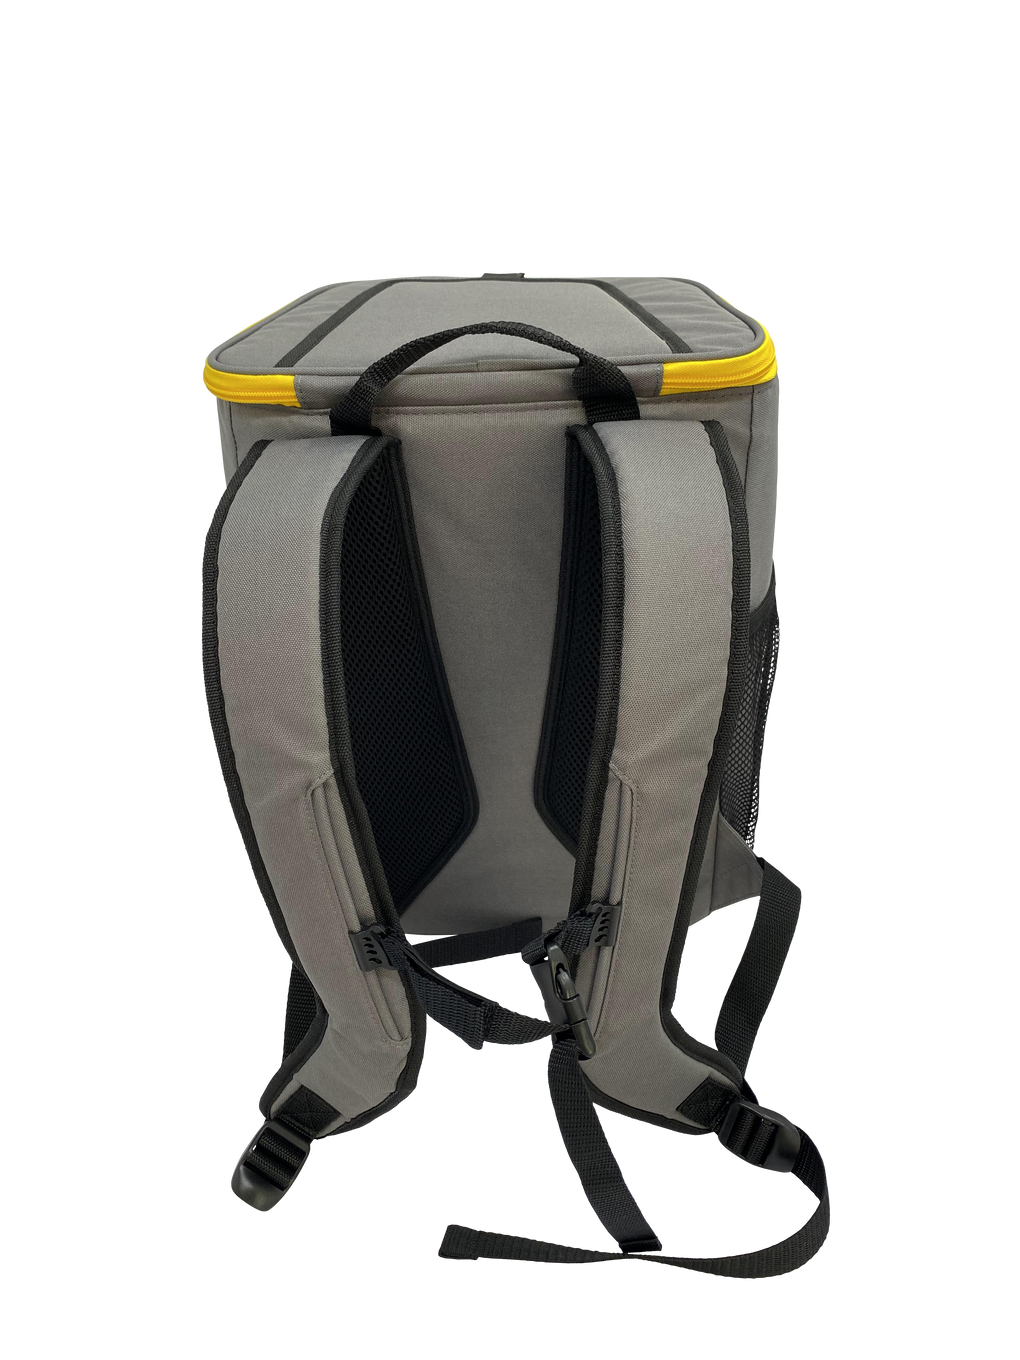 Caterpillar 28-Can Backpack Cooler, 11 x 9 x 15.75